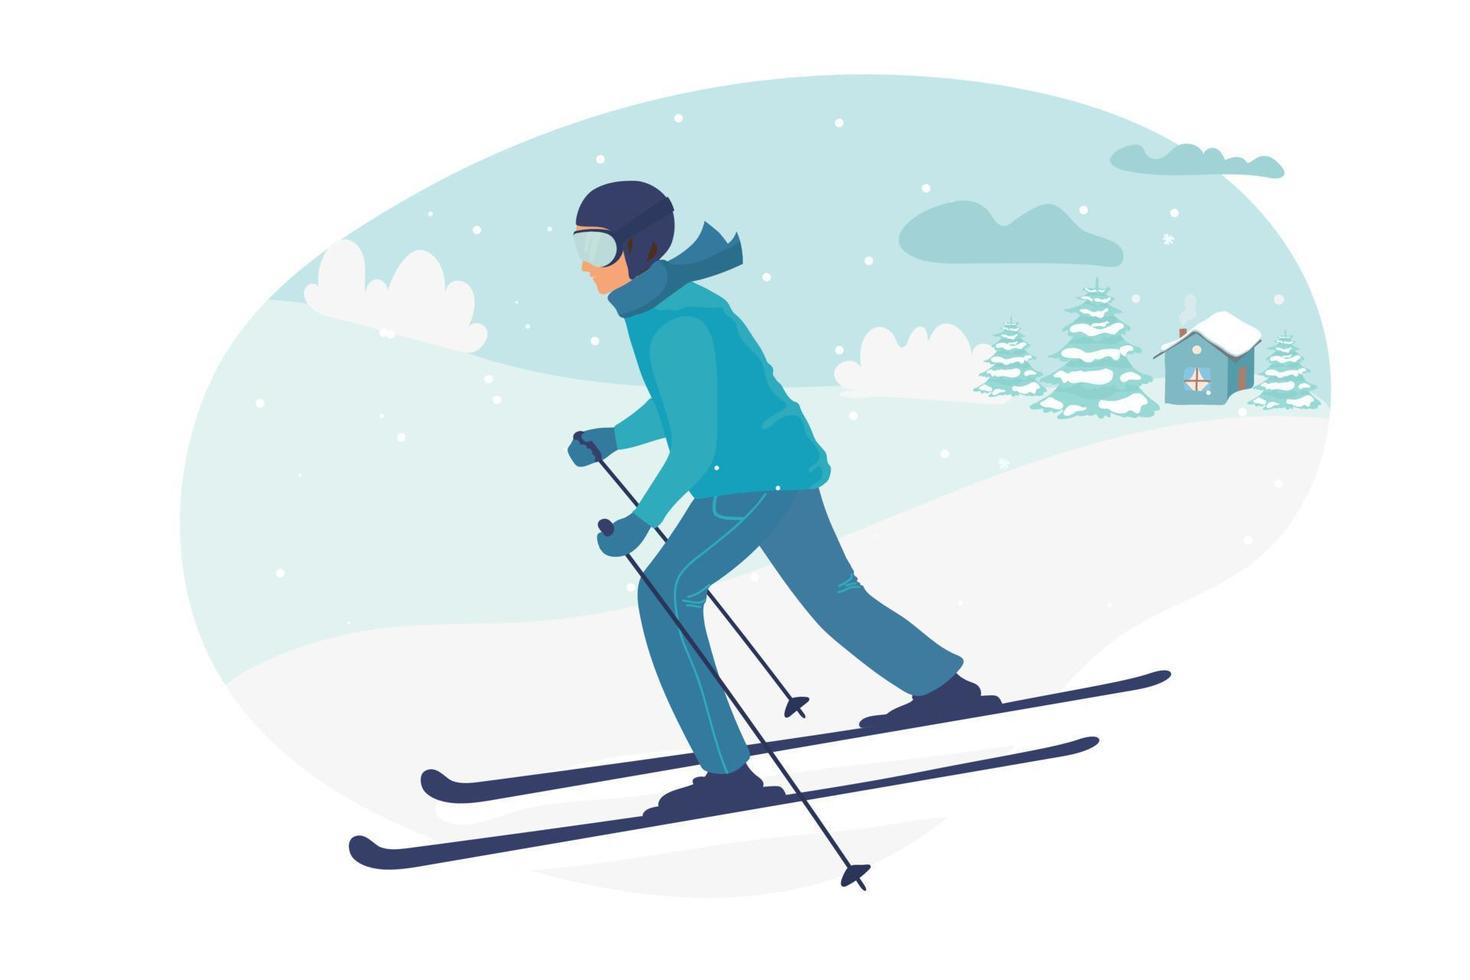 joven montado en esquís enmascarado, invierno. ilustración vectorial plana en estilo de dibujos animados. Ilustración de vector de actividades deportivas de invierno. paisaje de invierno